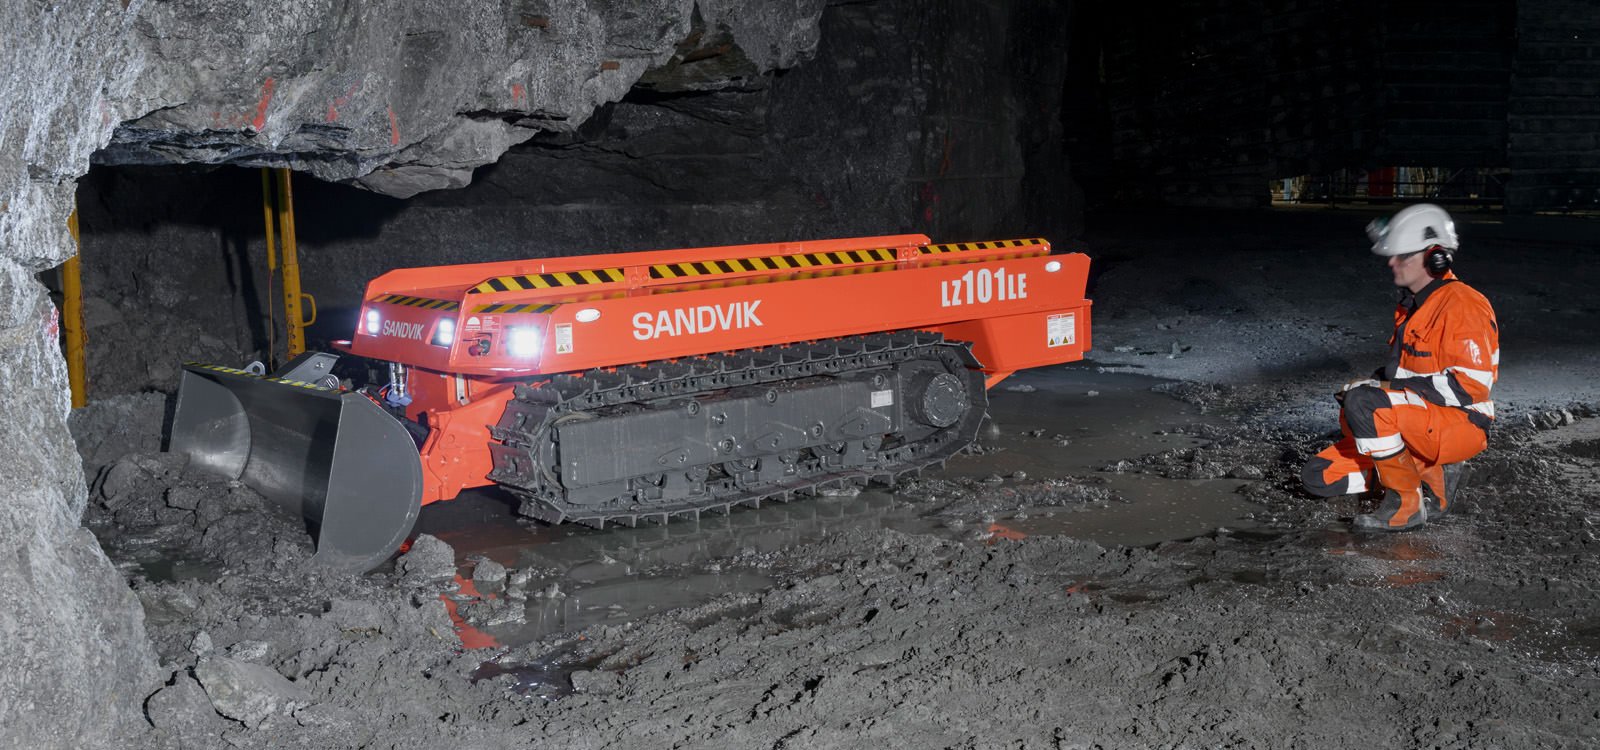 <p>Spycharka Sandvik LZ101LE jest zdalnie sterowana, co umożliwia operatorom pracę z miejsca oddalonego od niebezpiecznych obszarów kopalni.</p>
